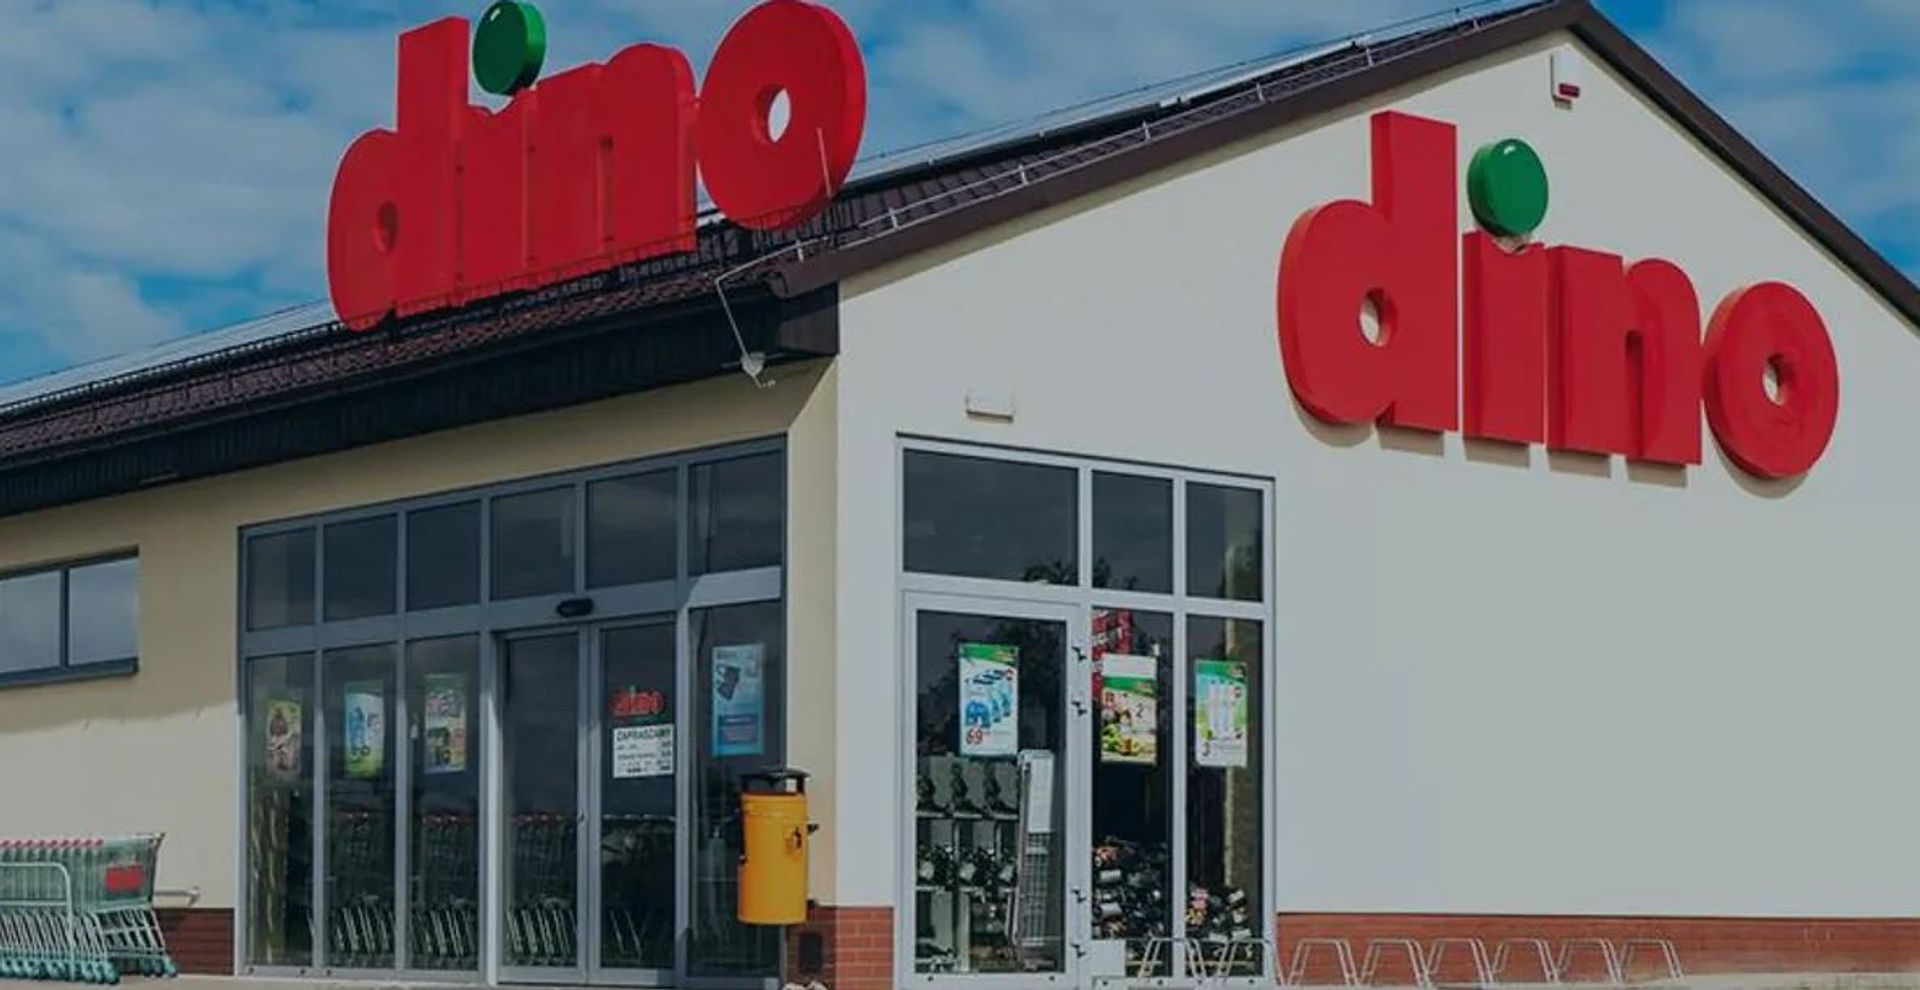 Polska sieć Dino otworzy kolejny nowy sklep w Legnicy